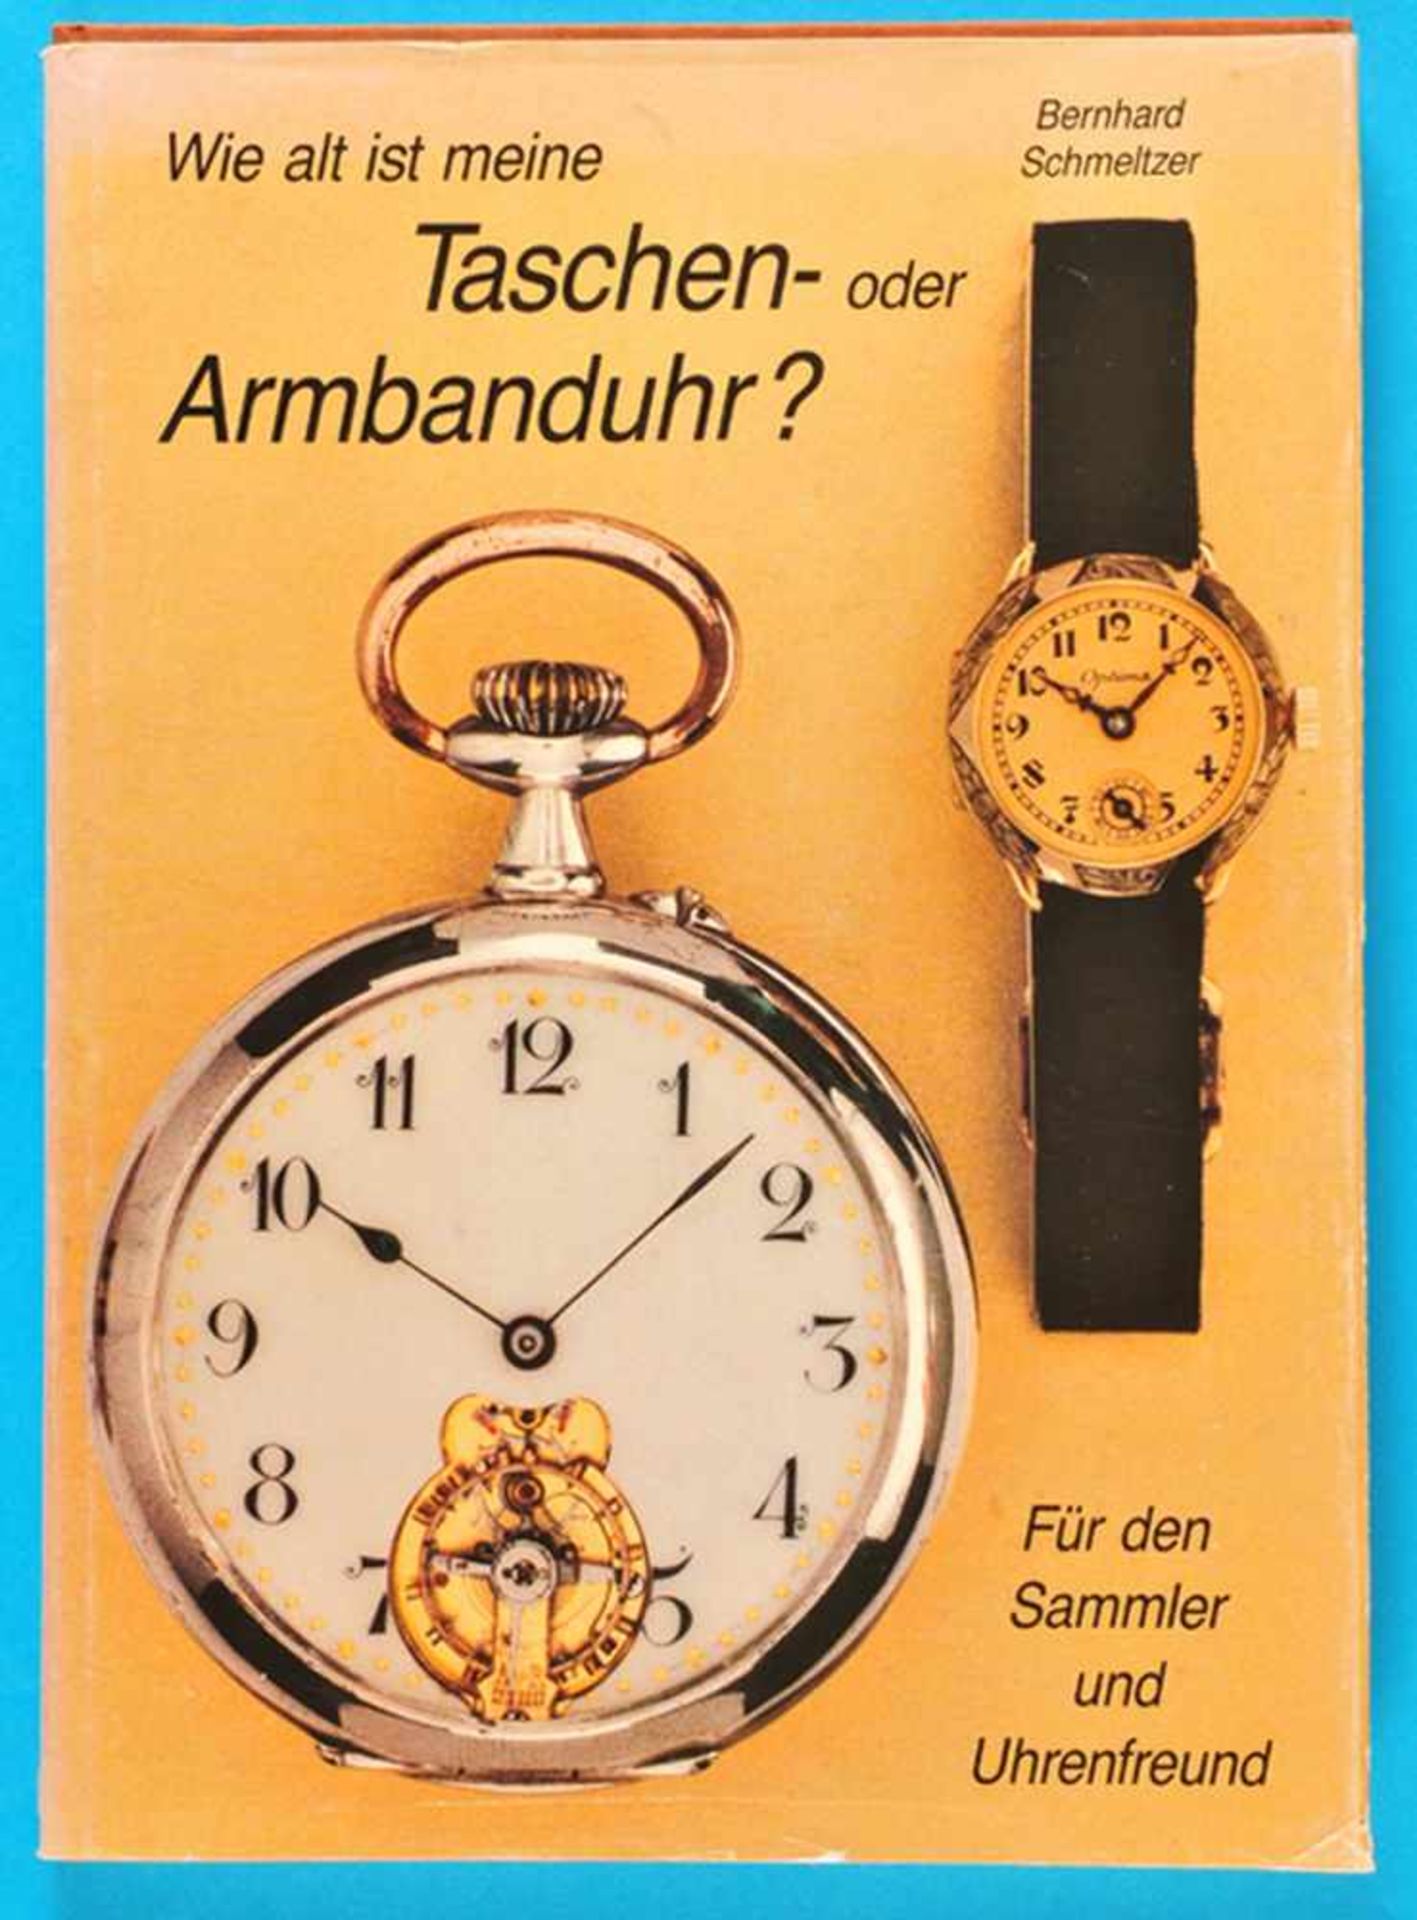 Bernhard Schmeltzer, Wie alt ist meine Taschenoder Armbanduhr? Für den Sammler und Uhrenfreund,